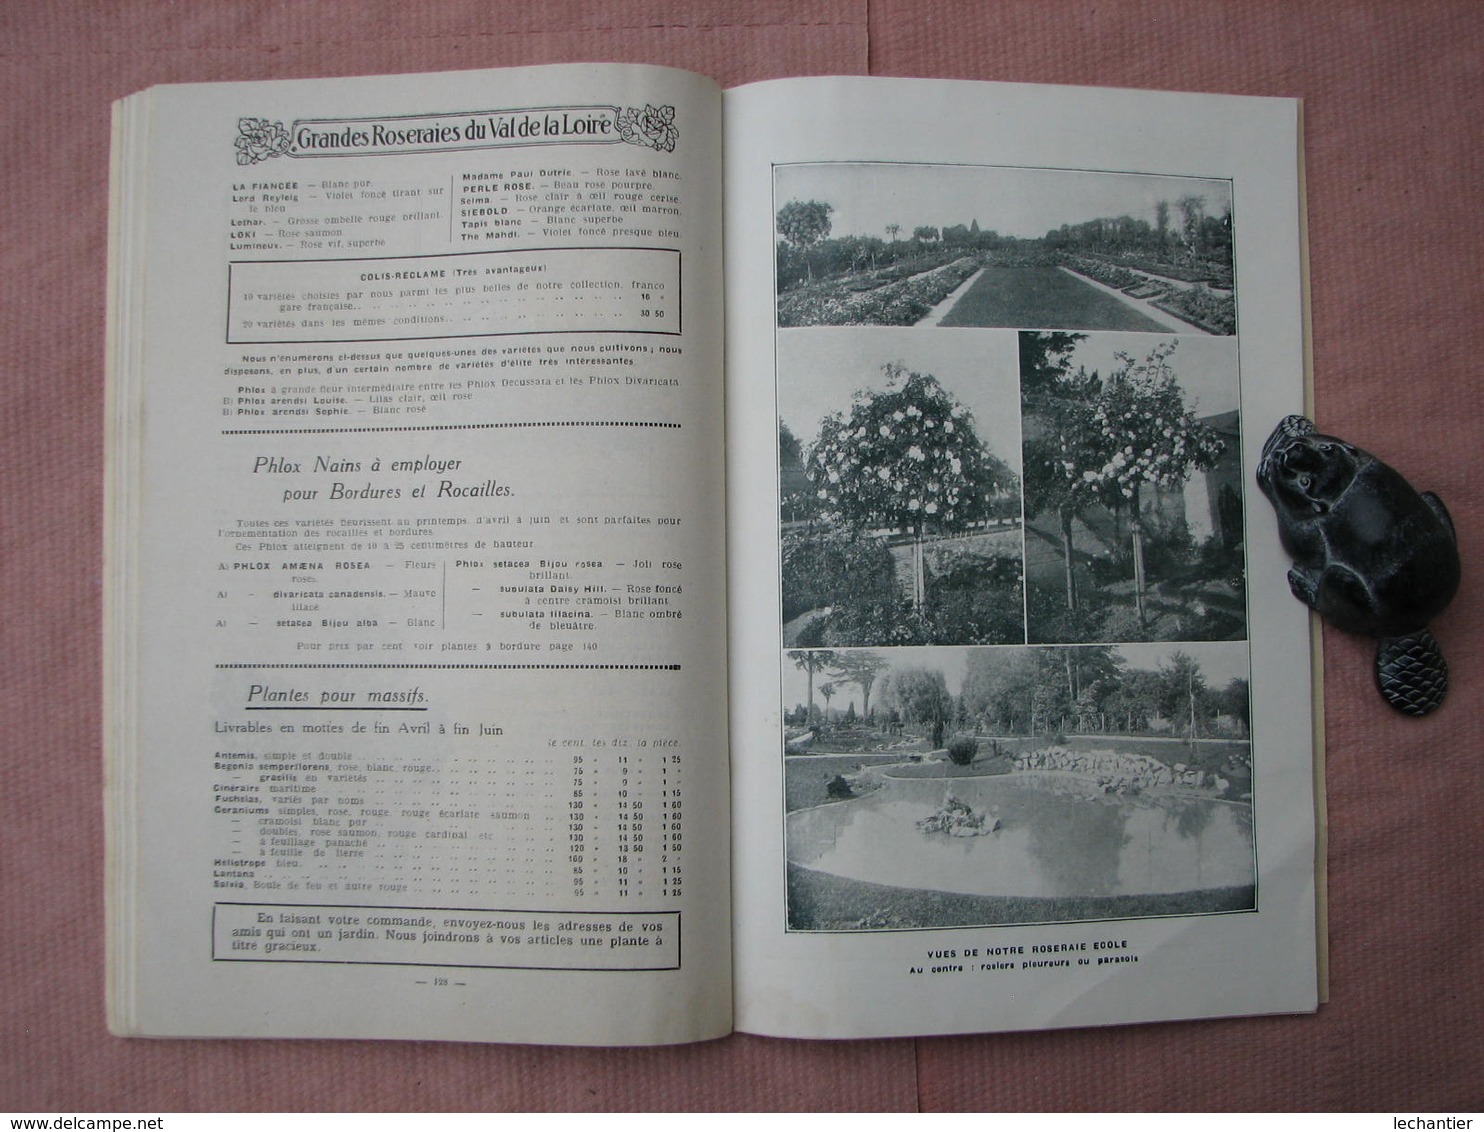 GRANDES  ROSERAIES du VAL de LOIRE  1925  160 pages 15X23 + bon de commande avec enveloppe   T.B.E.